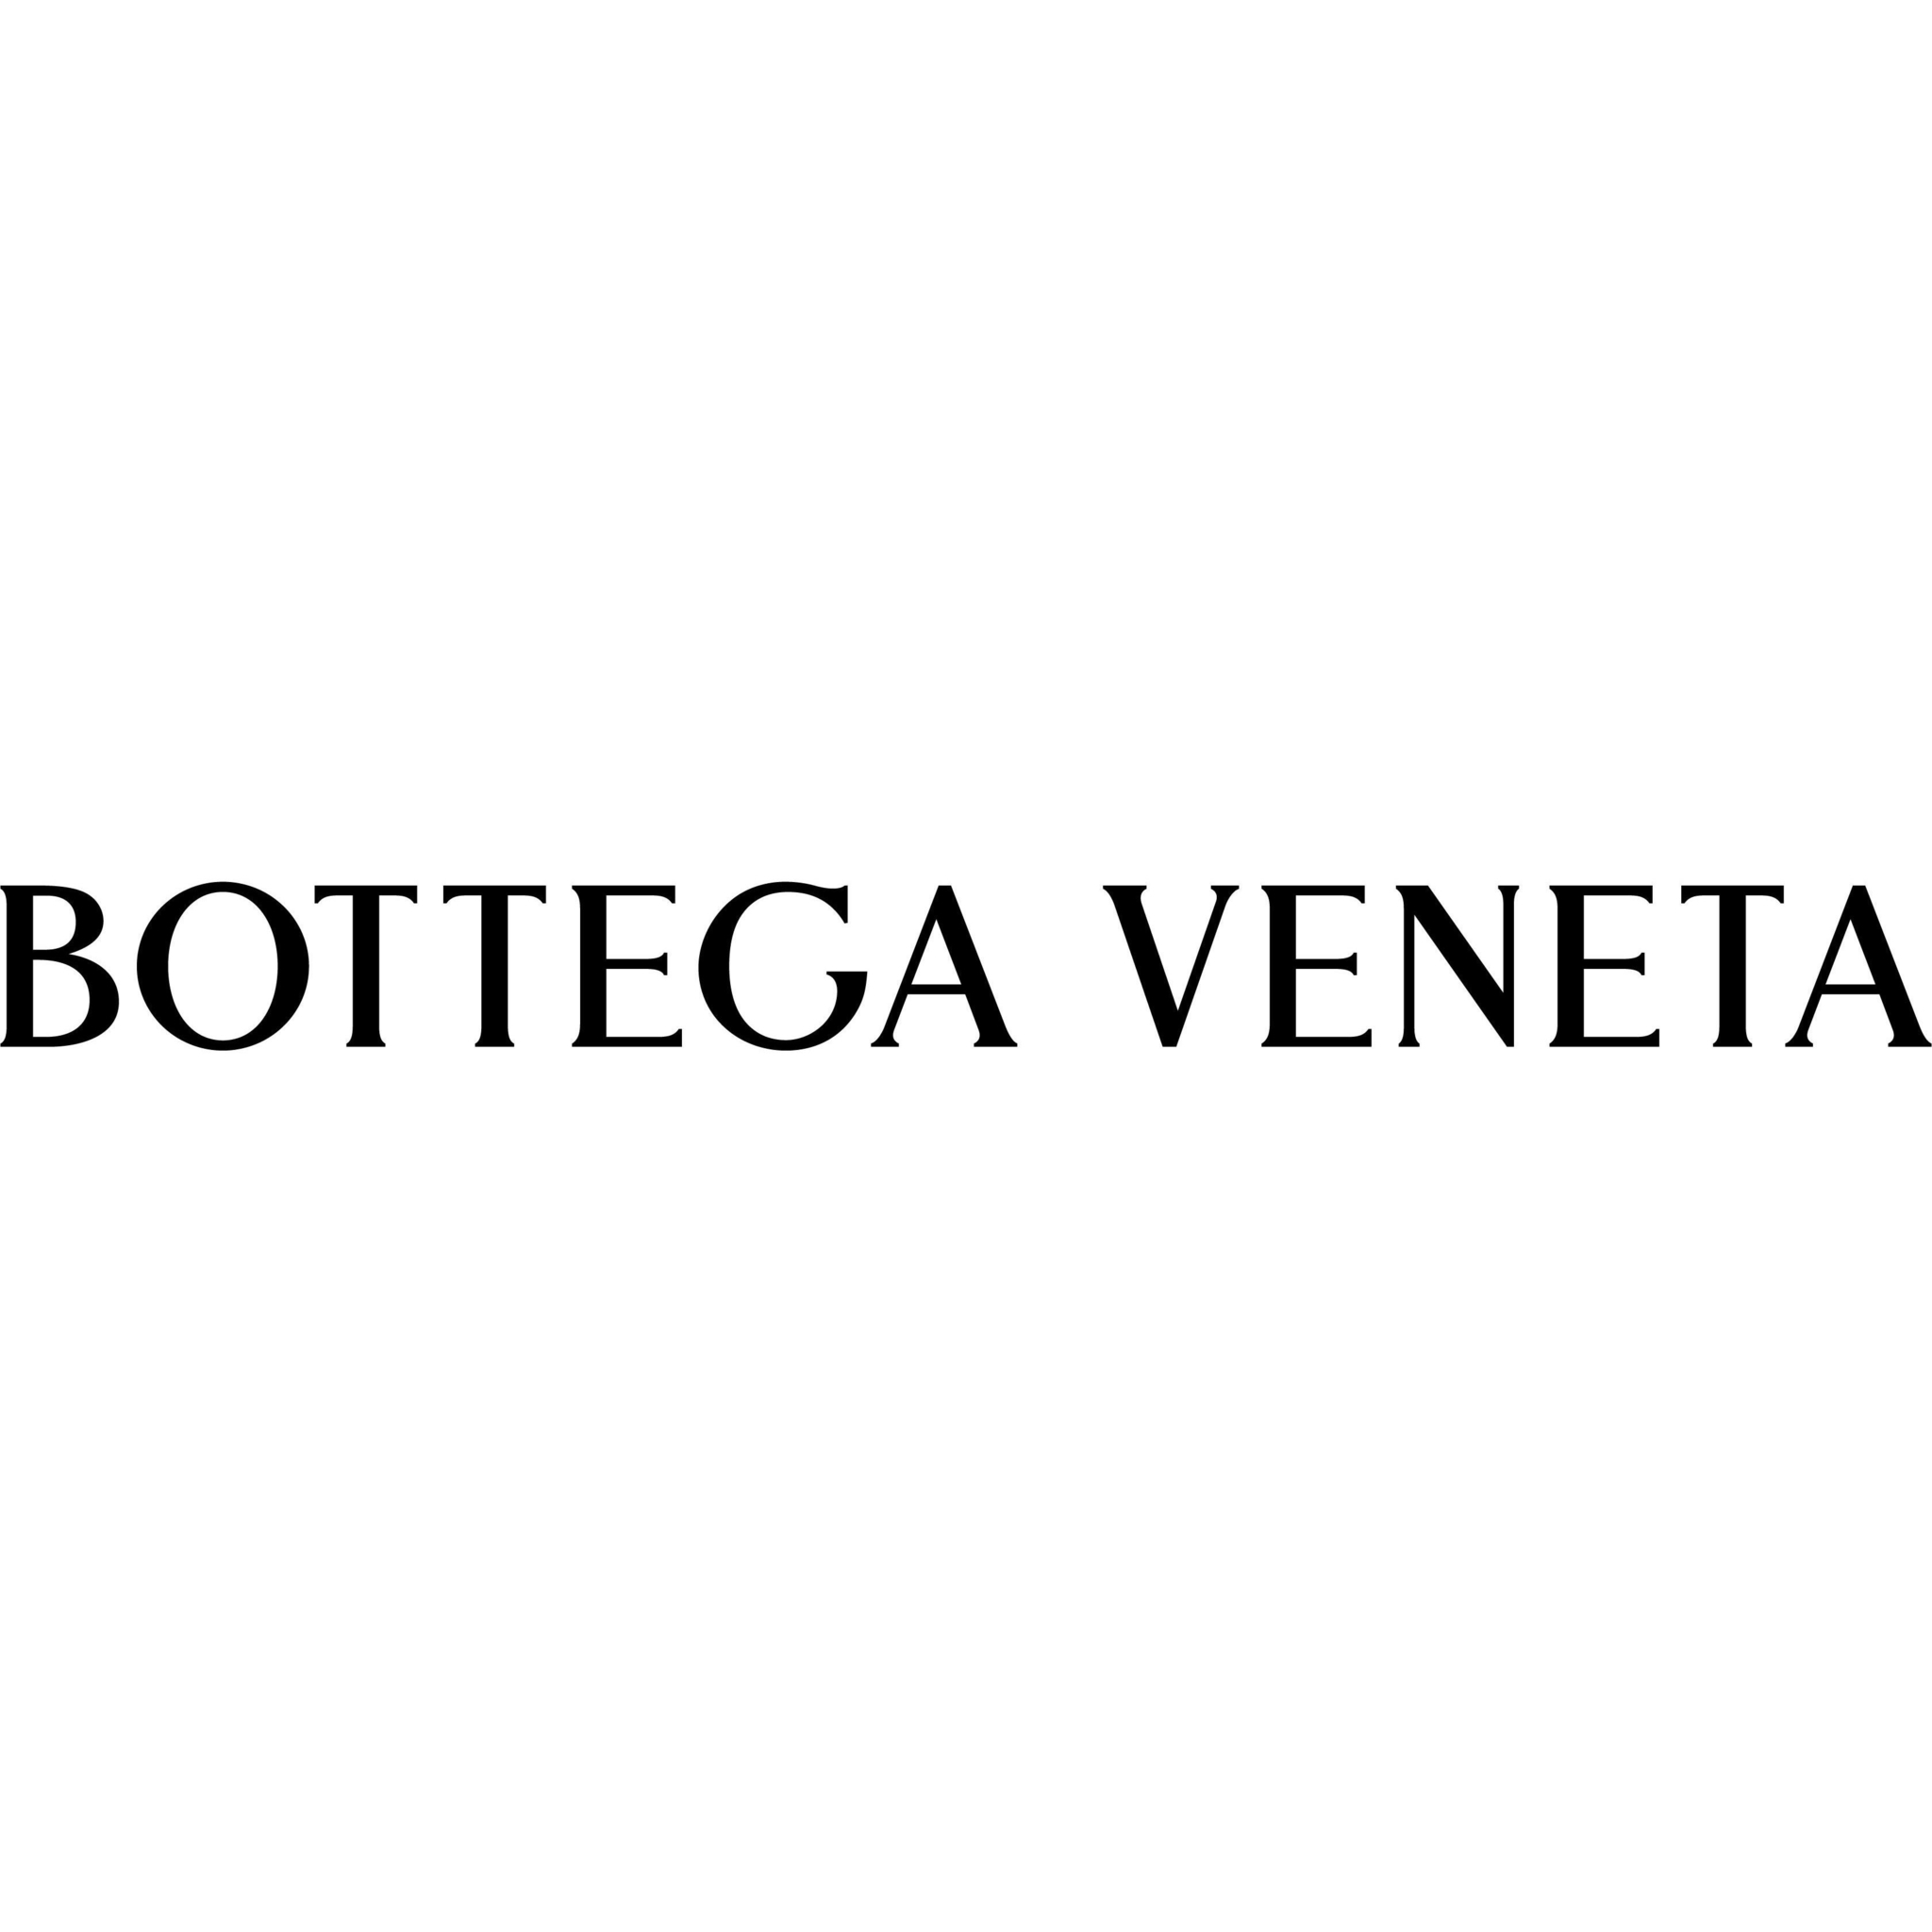 Bottega Veneta Vancouver Holt Renfrew - Magasins d'articles en cuir